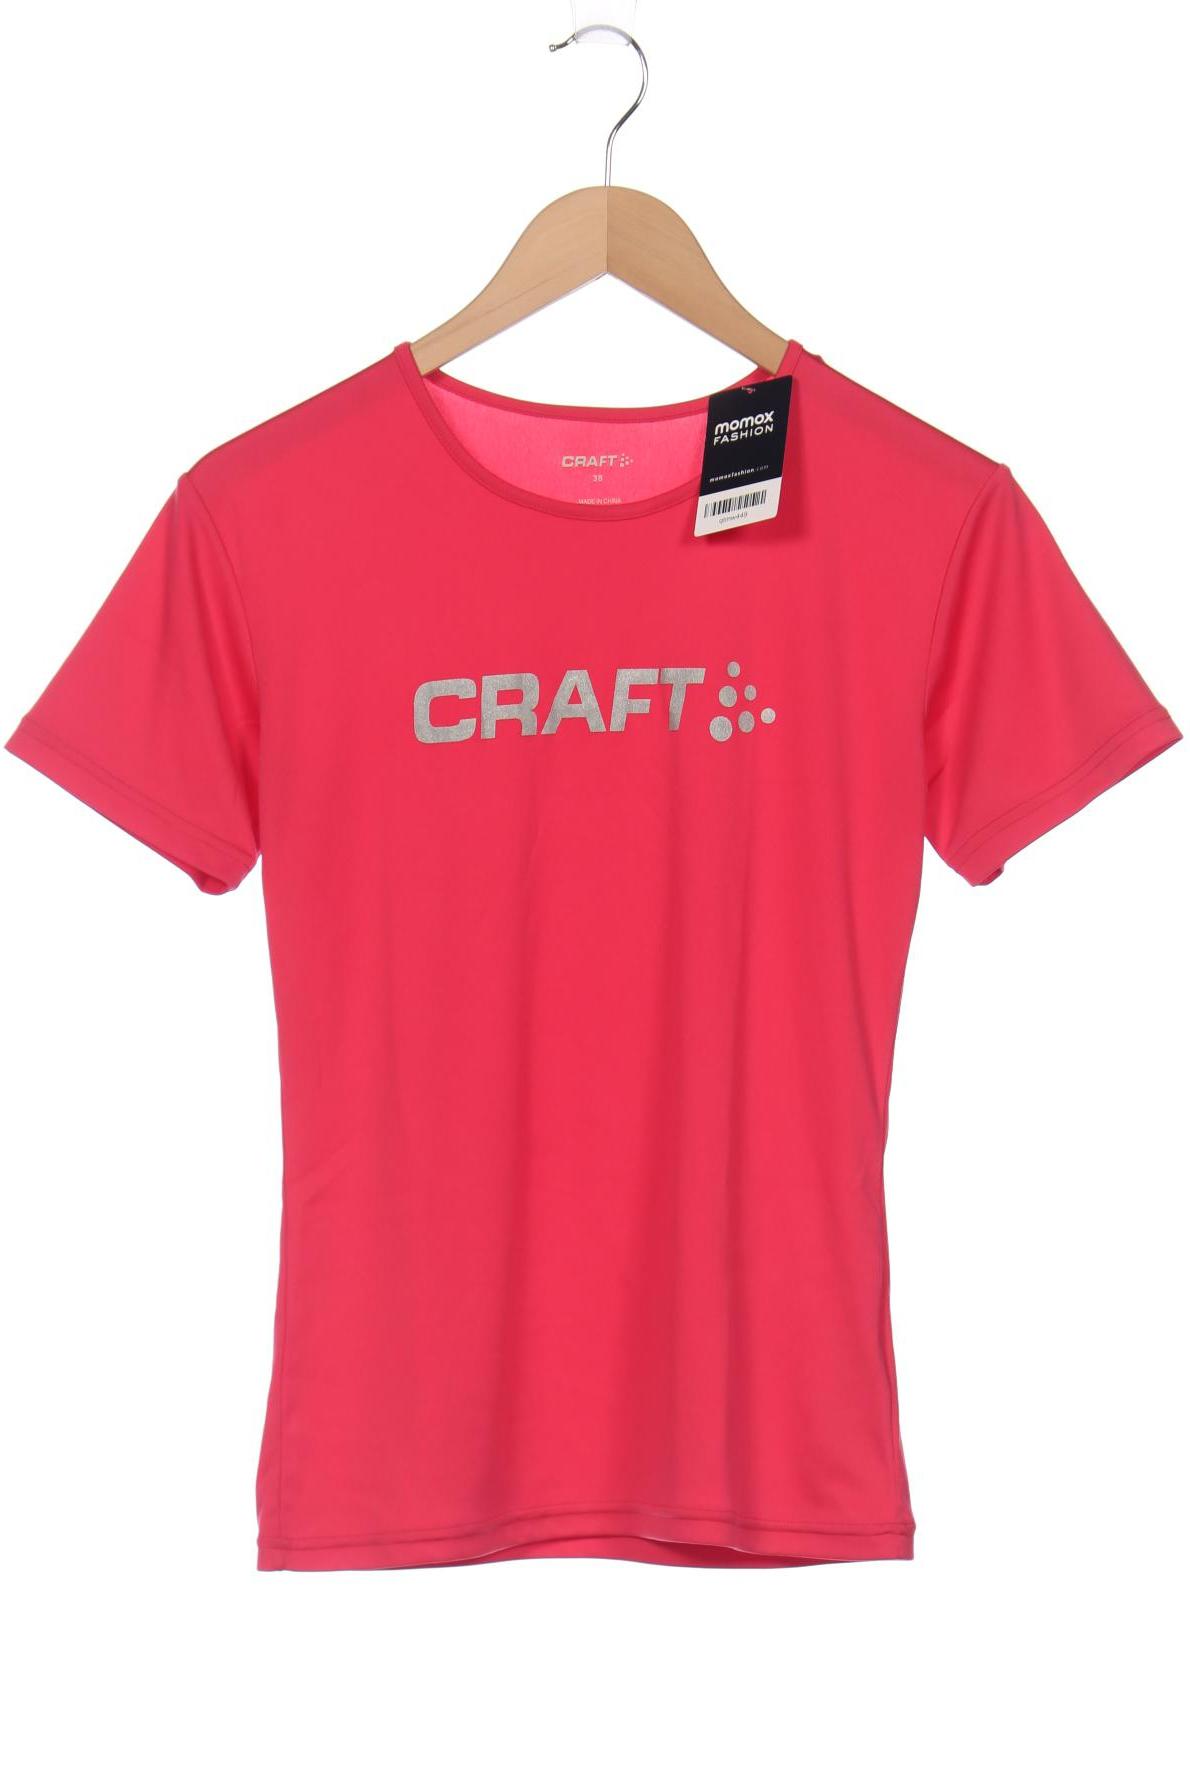 Craft Damen T-Shirt, pink, Gr. 38 von Craft